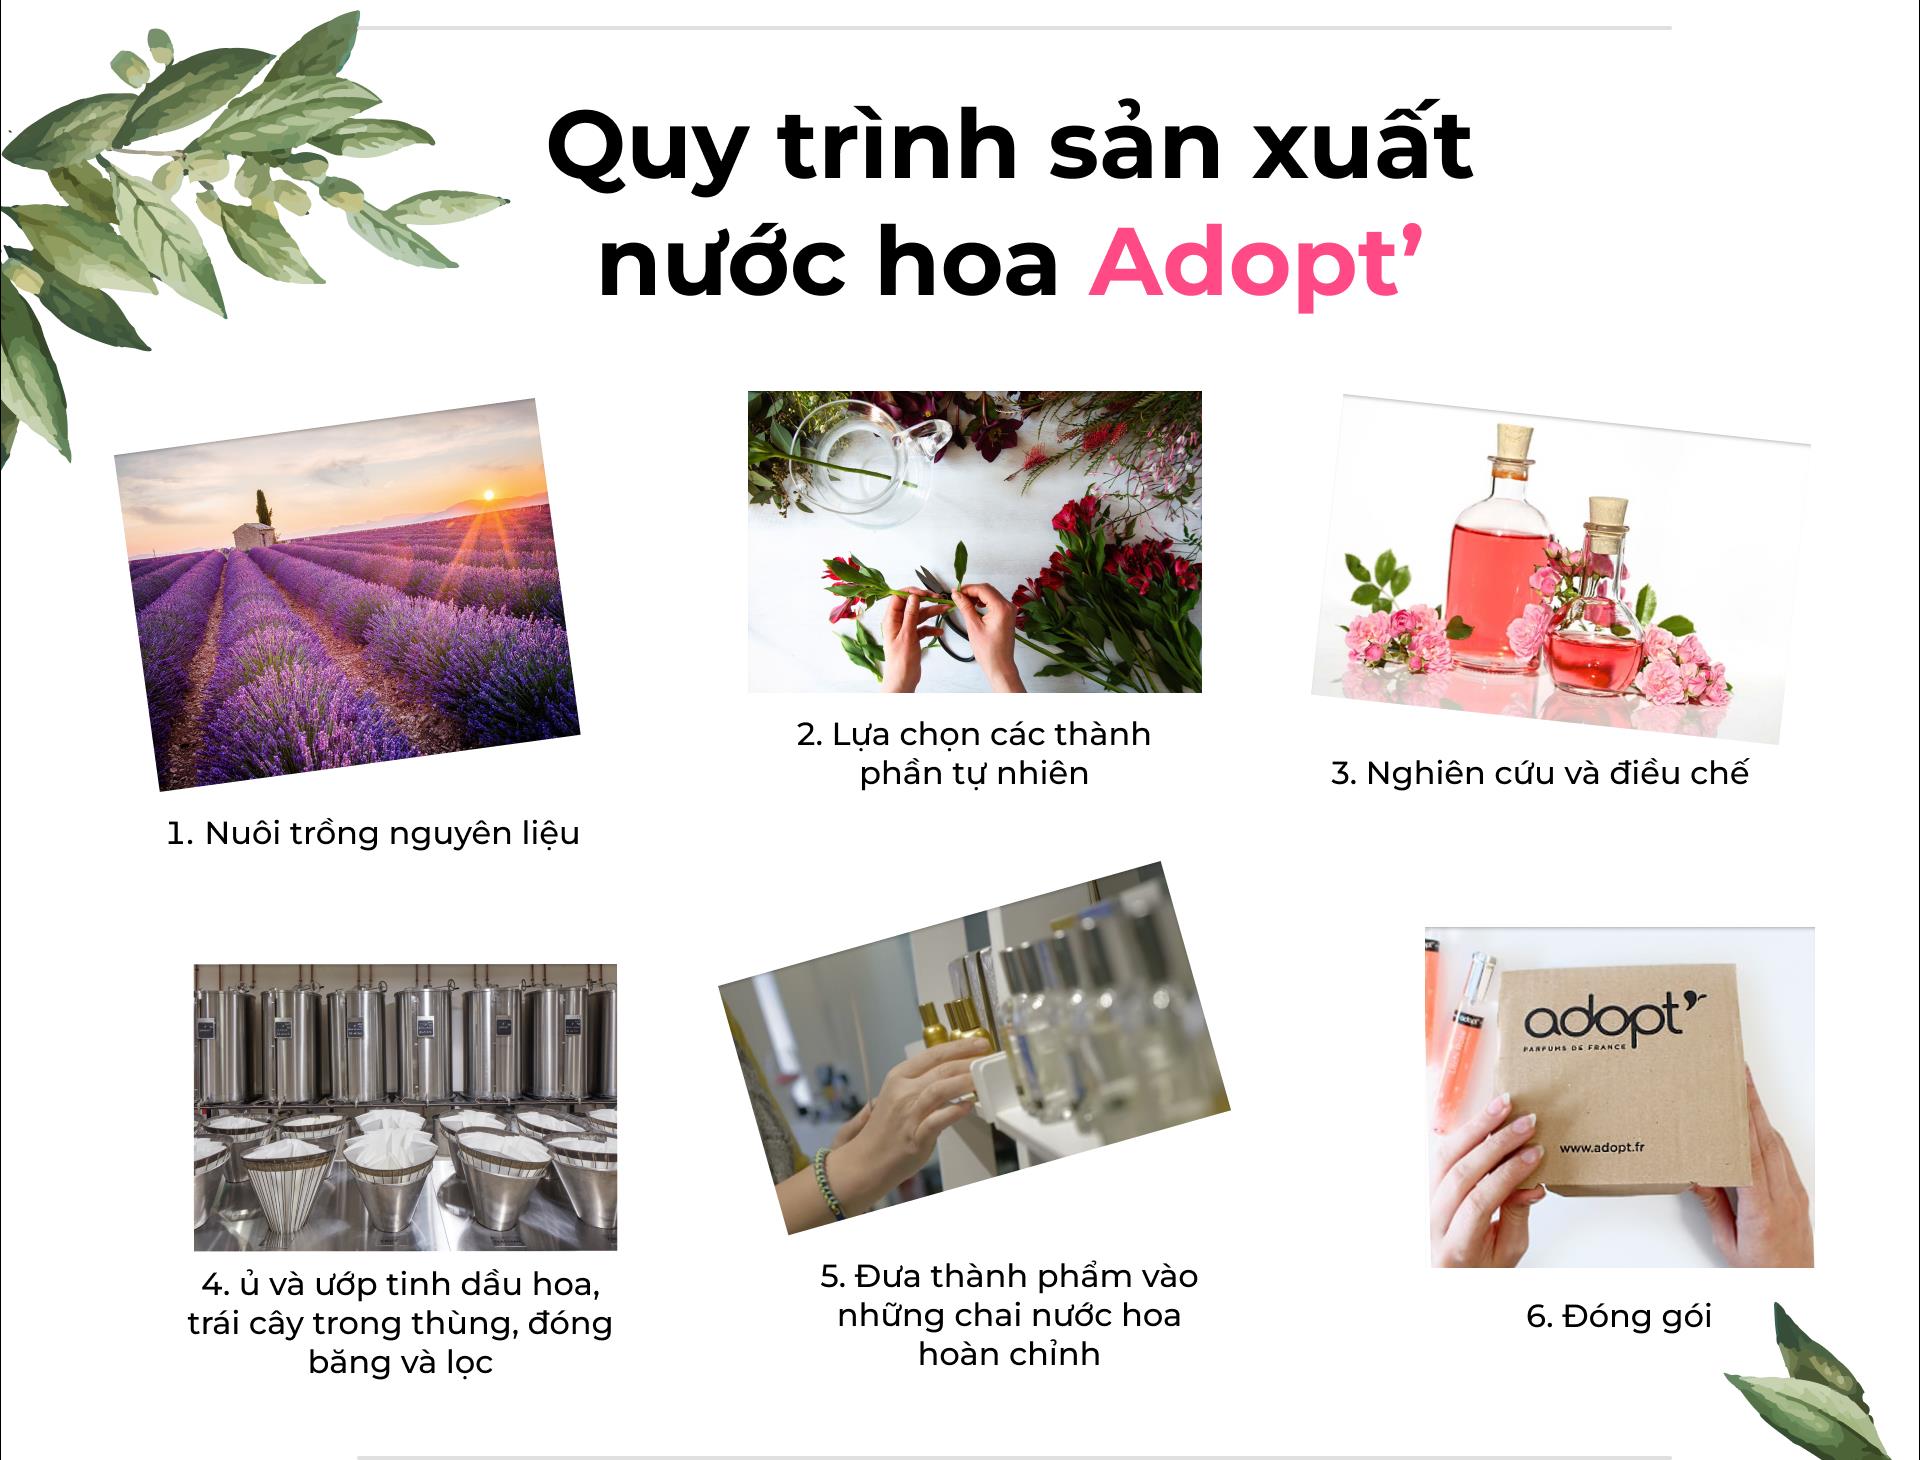 Adopt - Nước hoa hàng hiệu giá bình dân, nâng tầm trải nghiệm người dùng Việt - Ảnh 2.